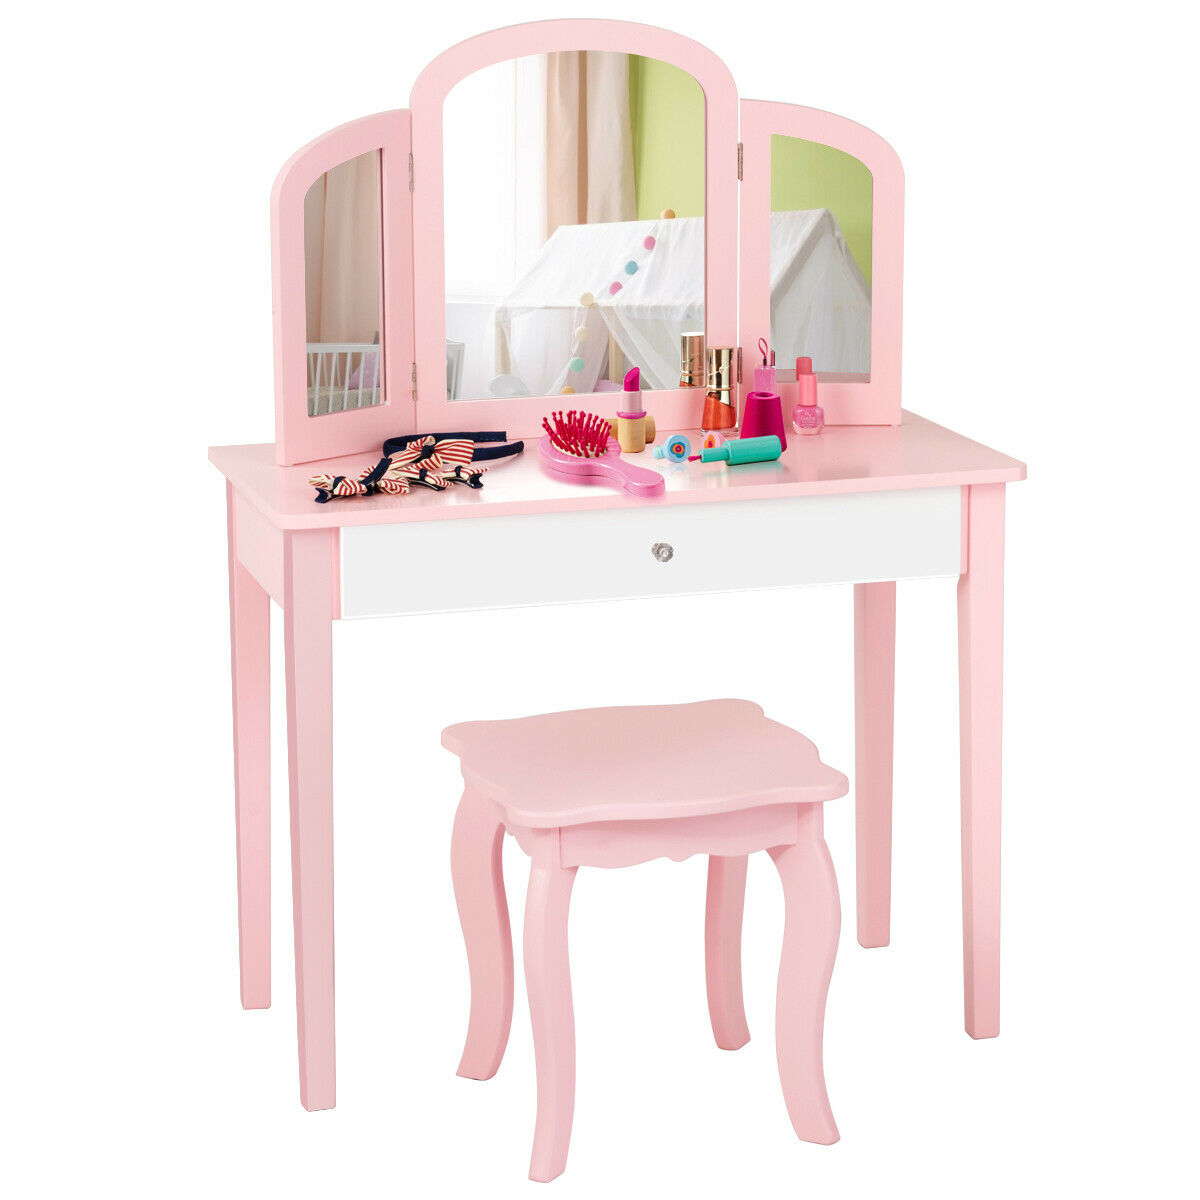 dressing table for little girl